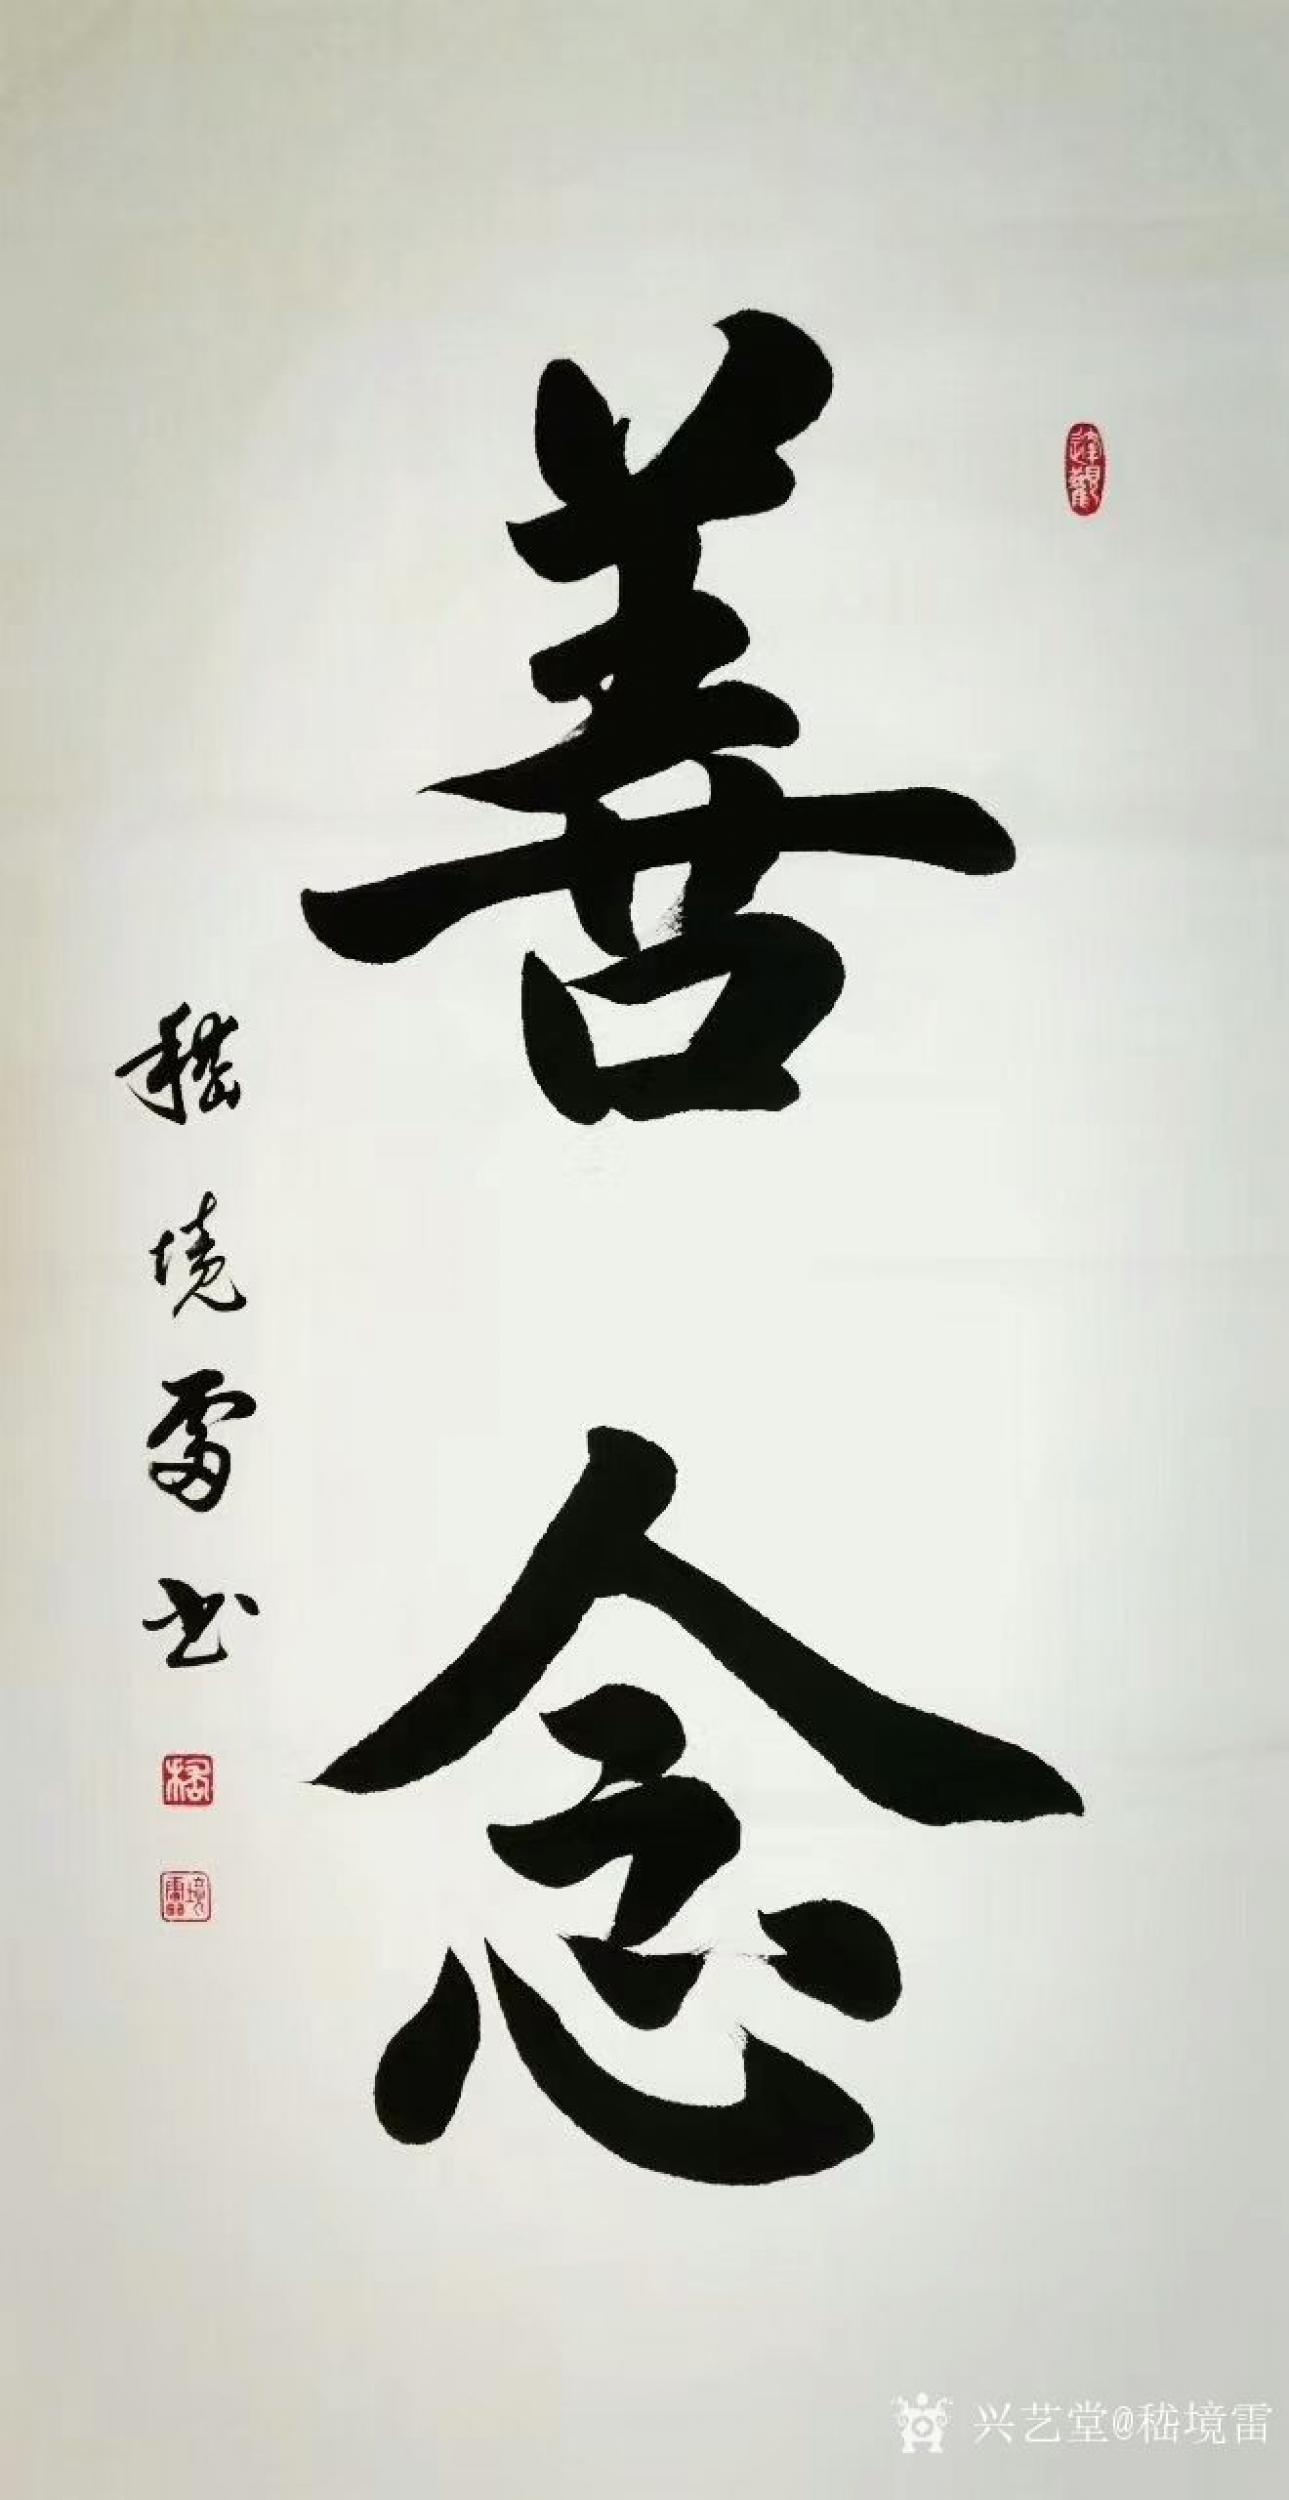 嵇境雷日志-楷书书法作品《善念》,《仁义礼智信》,《静心生慧》,尺寸